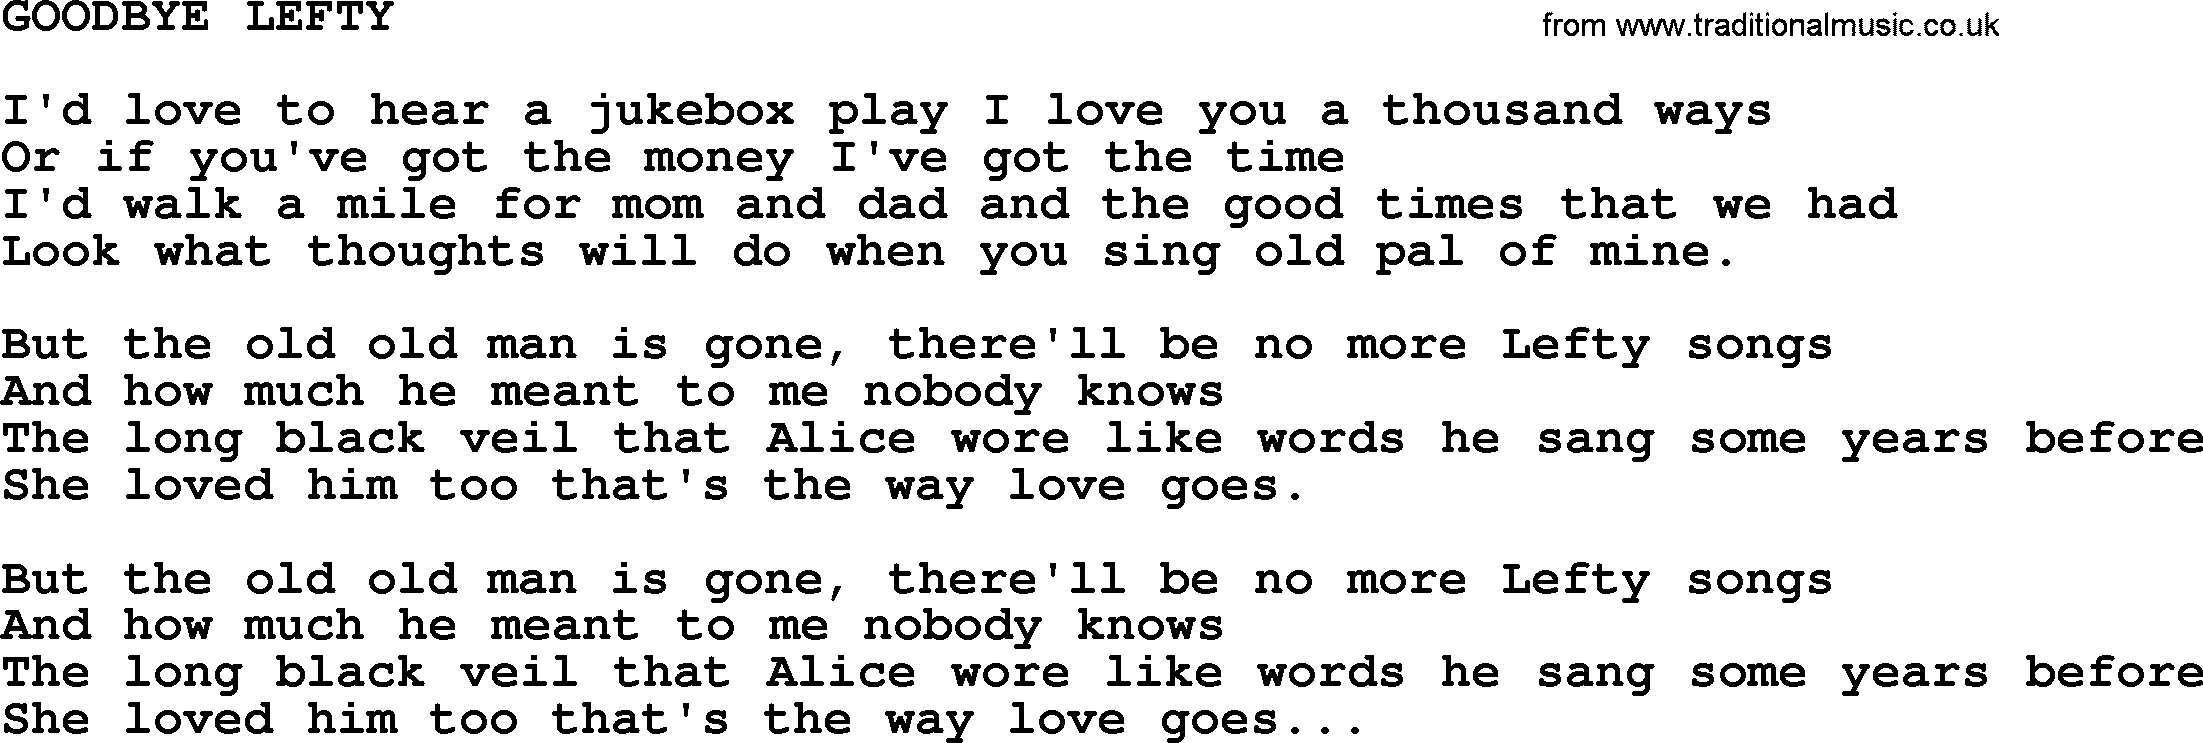 Merle Haggard song: Goodbye Lefty, lyrics.